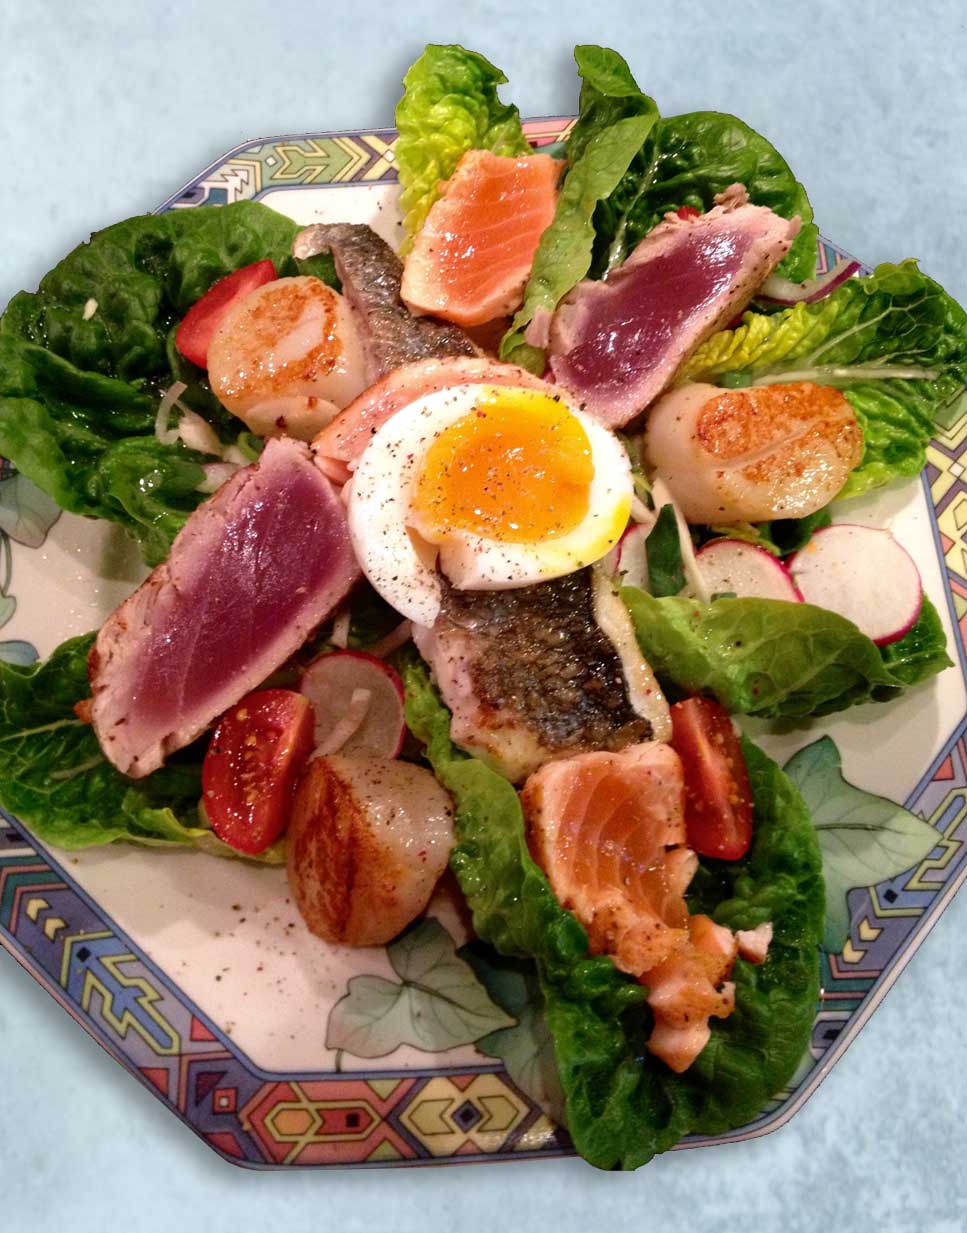 Vissalade van zeebaars, zalm, tonijn en ei